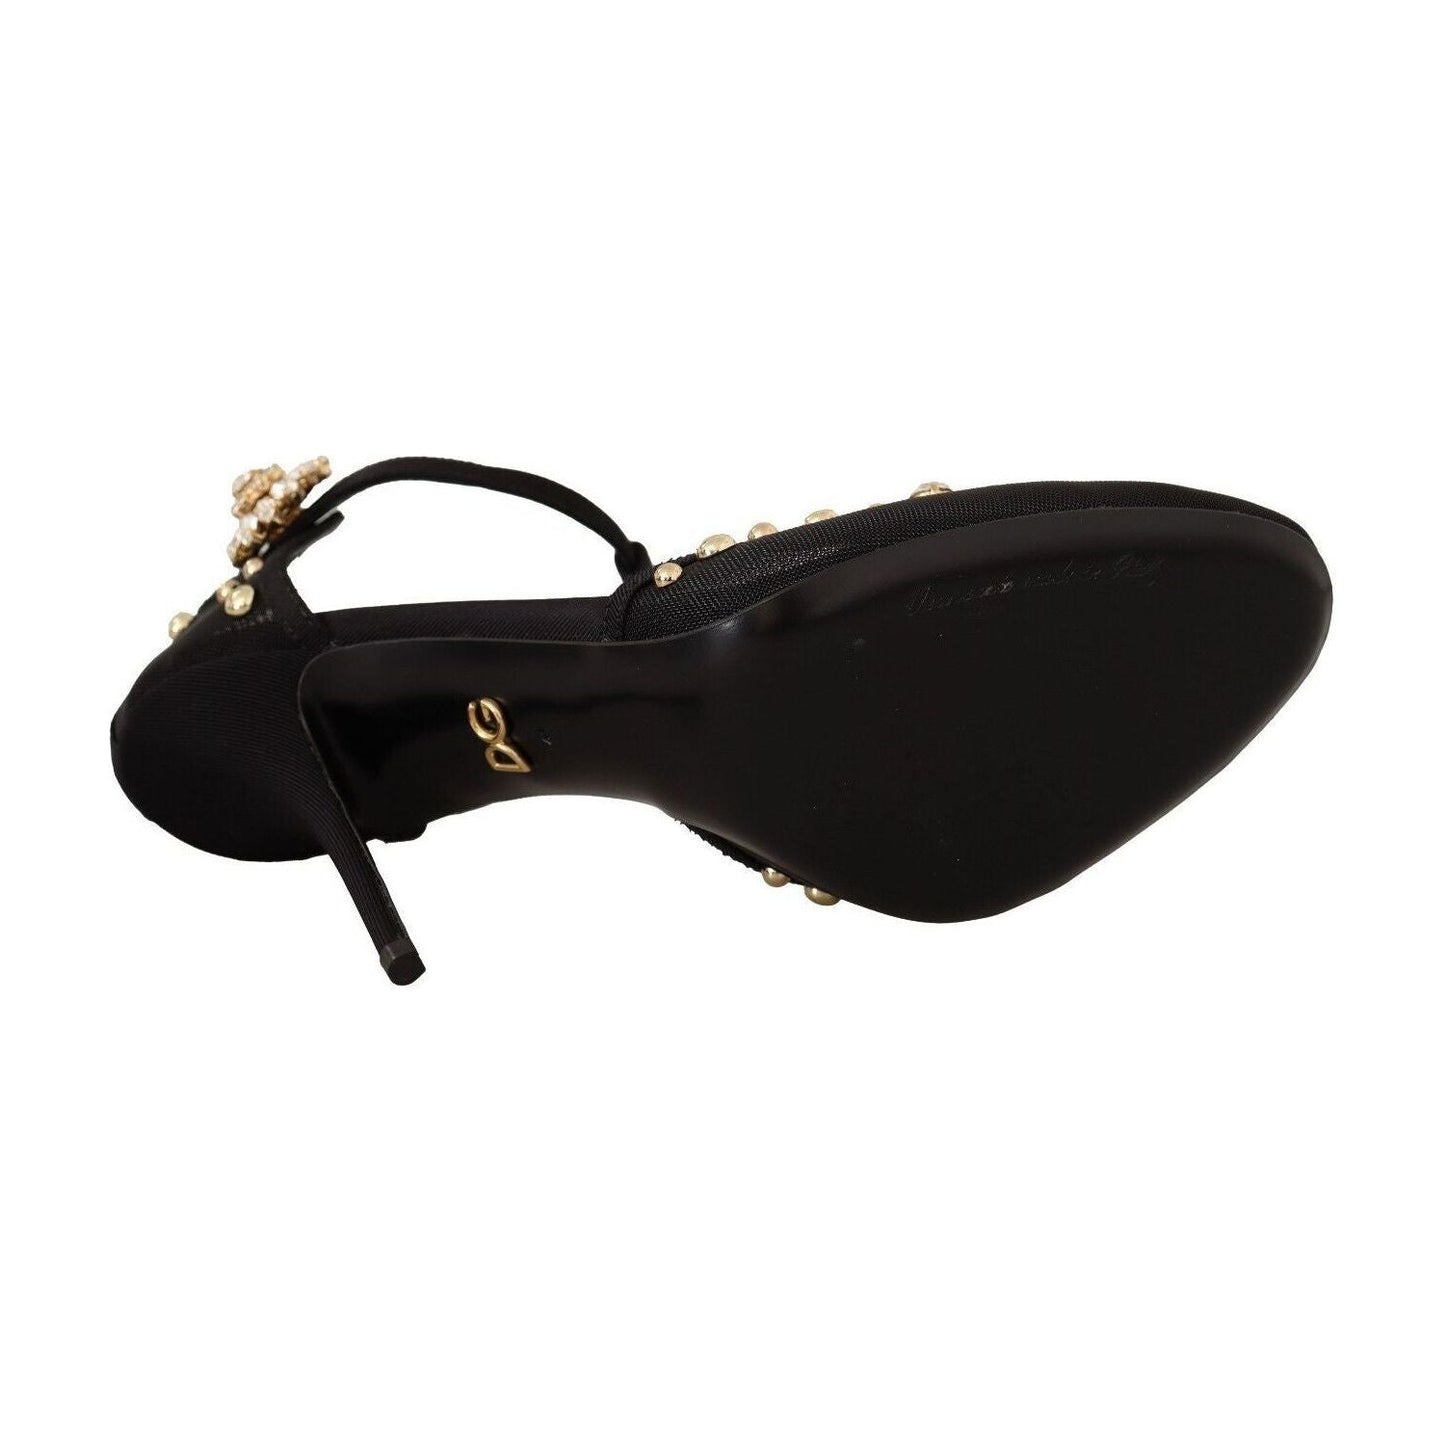 Dolce & Gabbana Elegant Crystal-Embellished Mesh T-Strap Pumps black-mesh-crystals-t-strap-heels-pumps-shoes